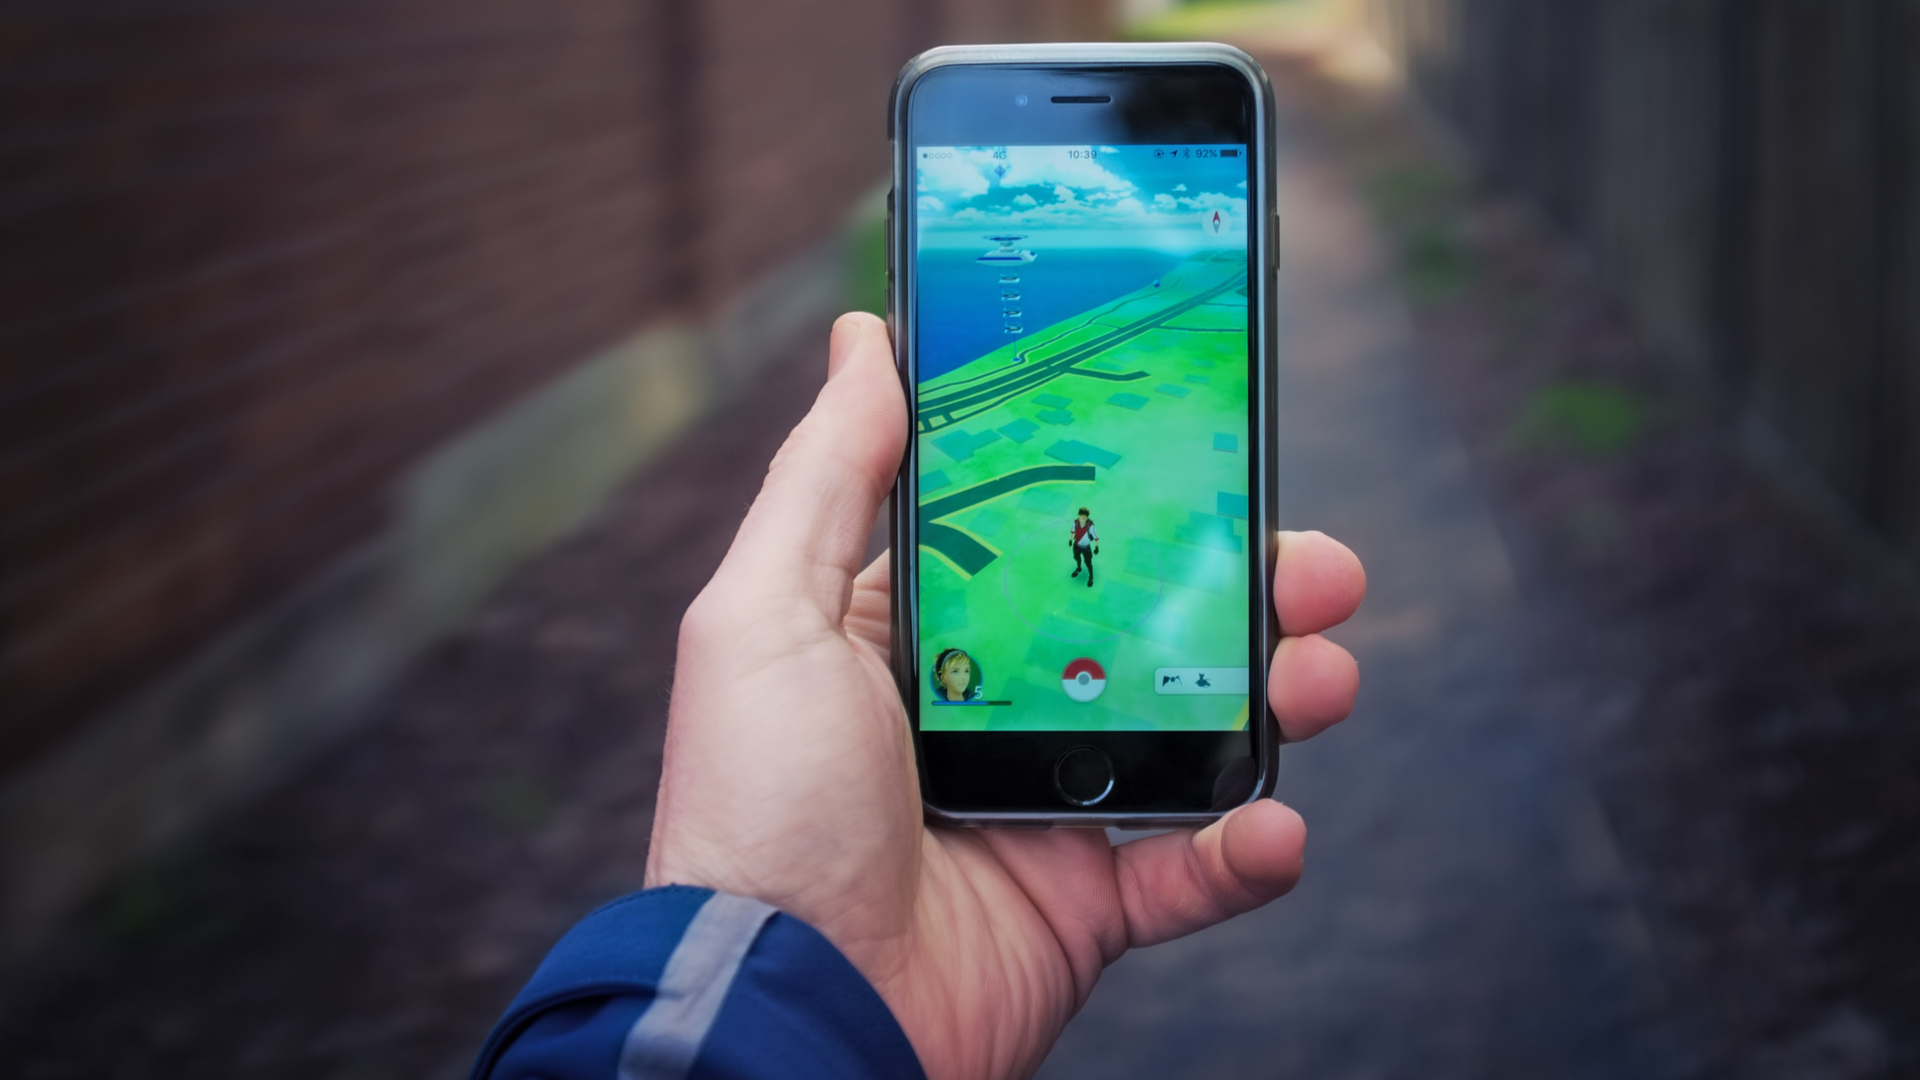 Como resolver problemas do jogo Pokémon Go em celulares iPhone